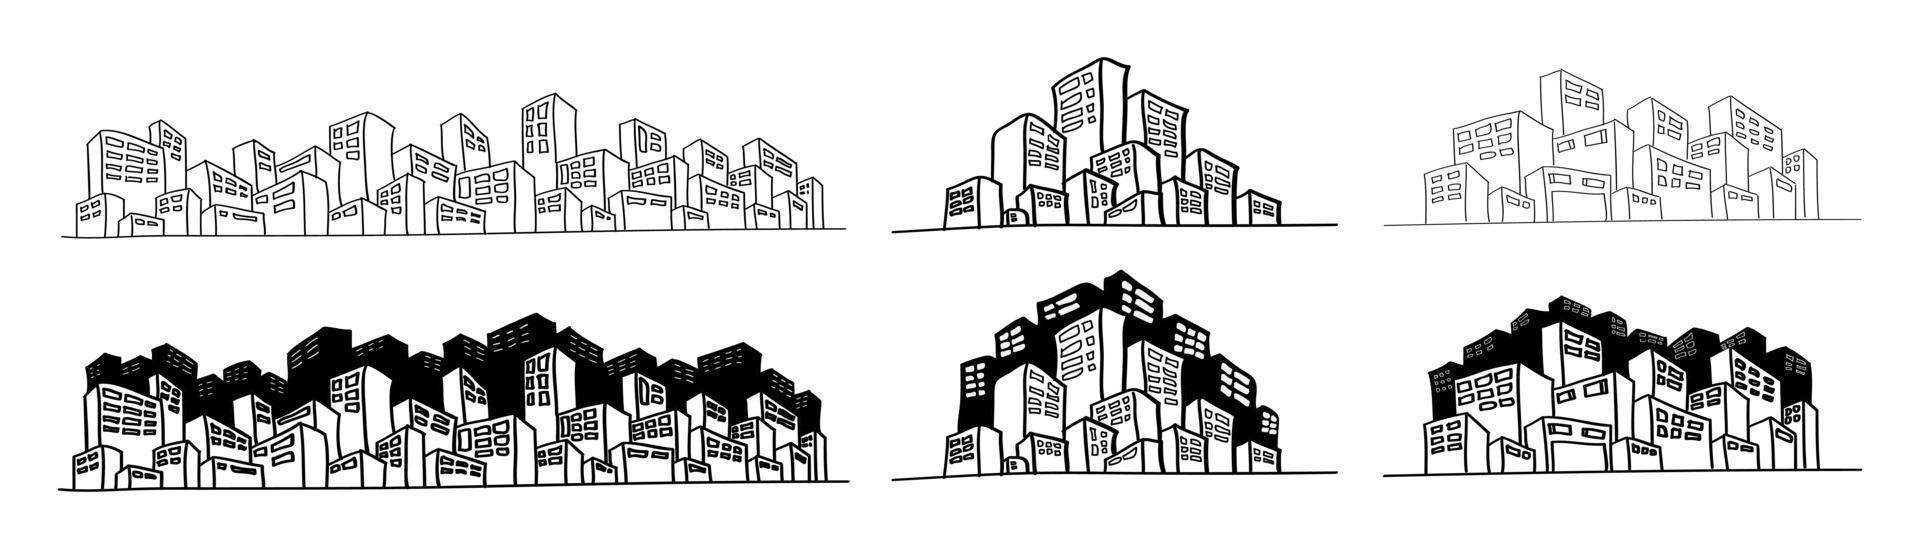 reeks van hand- getrokken stadsgezicht illustratie in tekening stijl vector